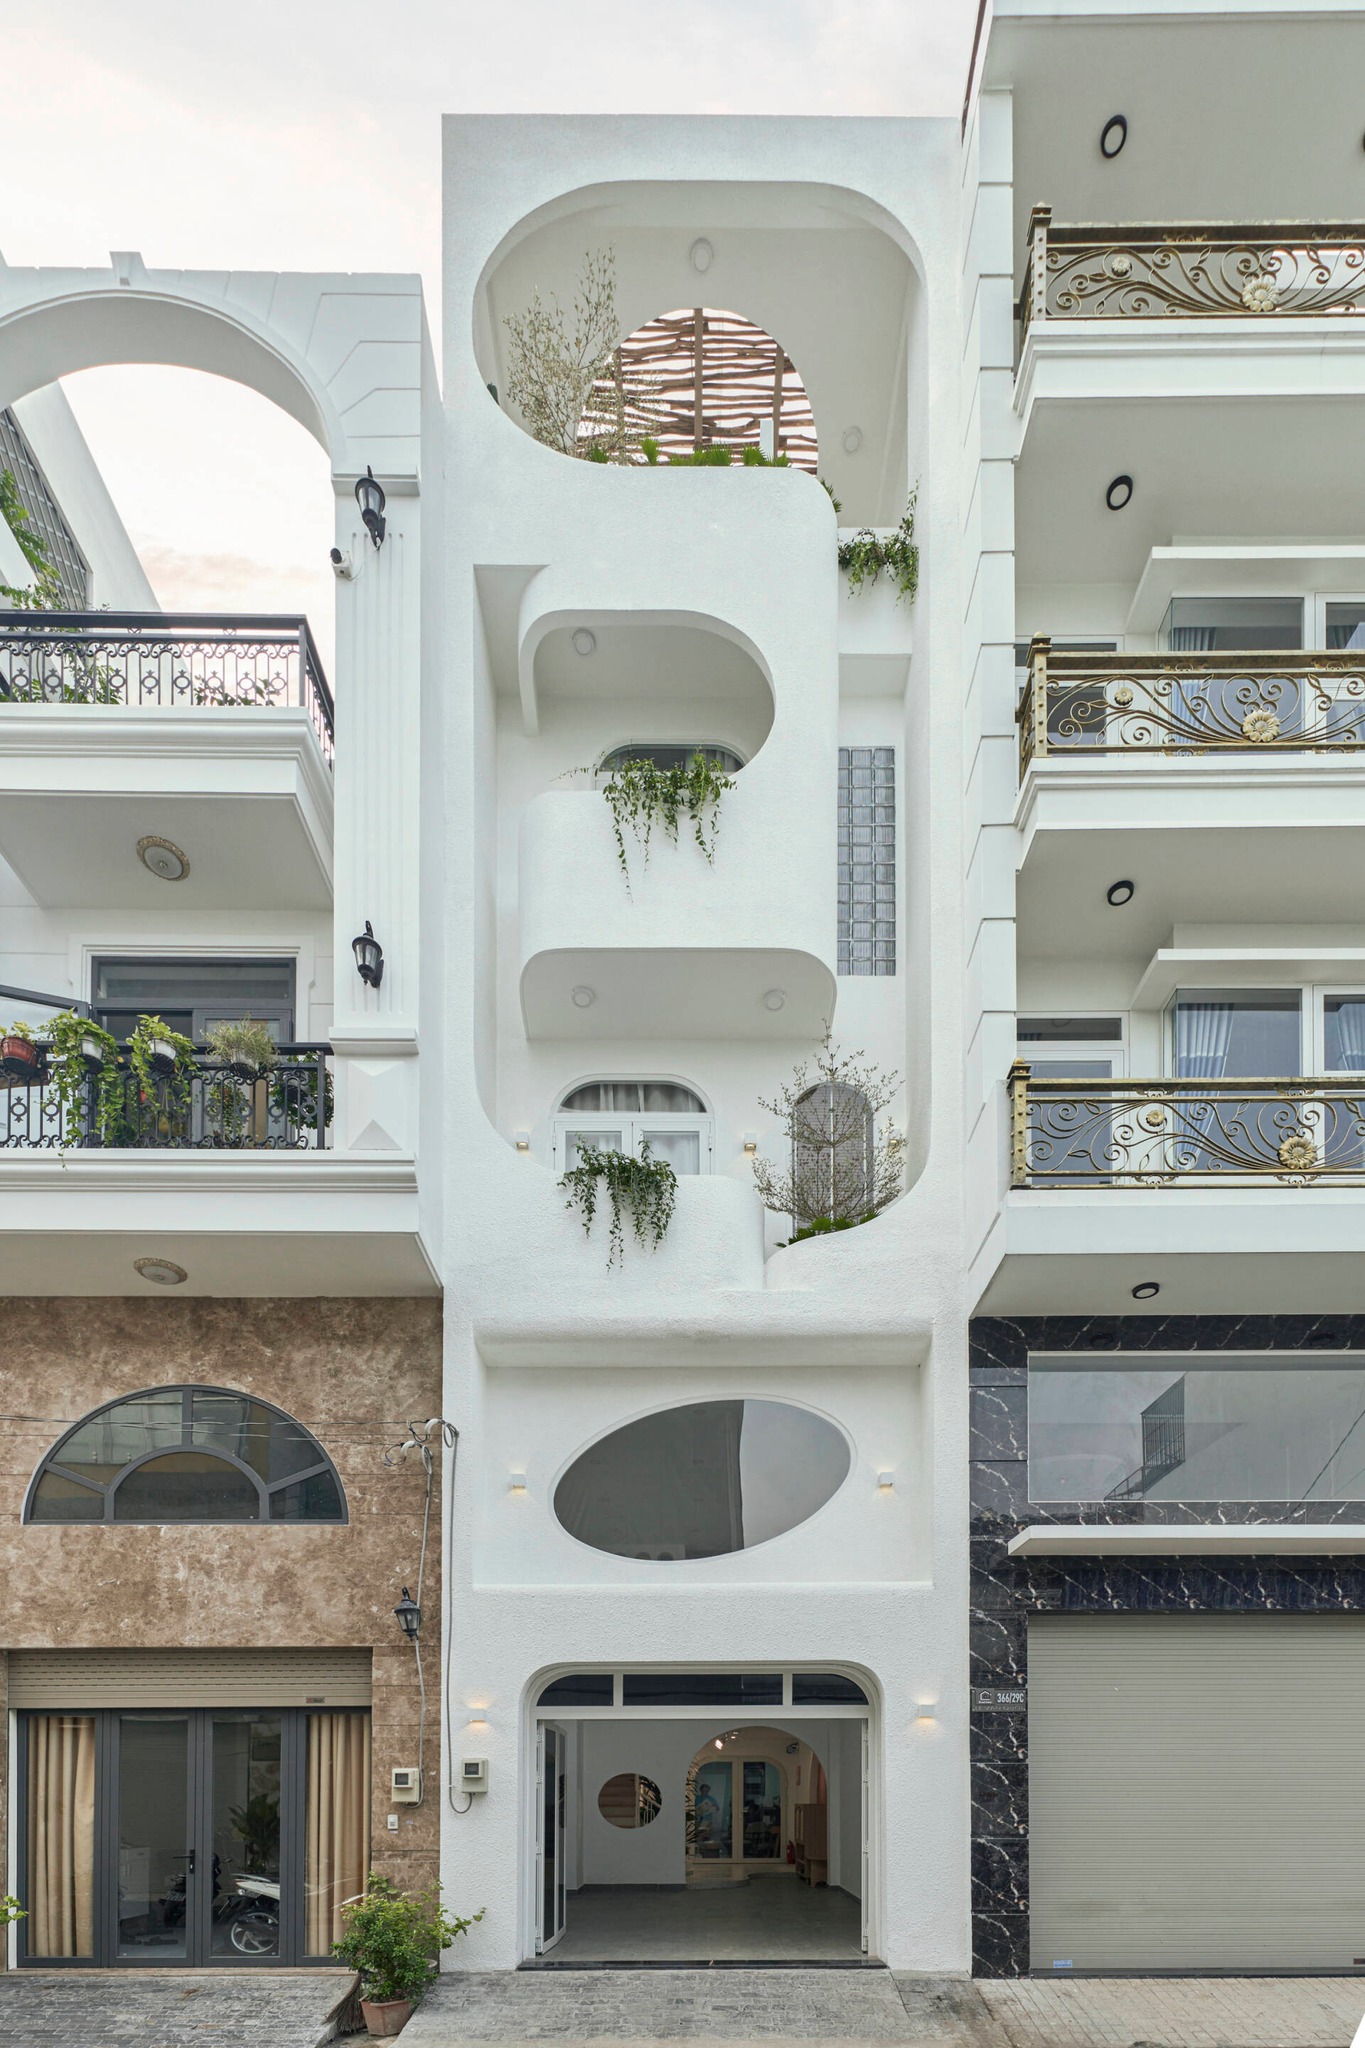 Căn nhà theo phong cách Địa Trung Hải ở quận Tân Bình, TP HCM - Ảnh 1.